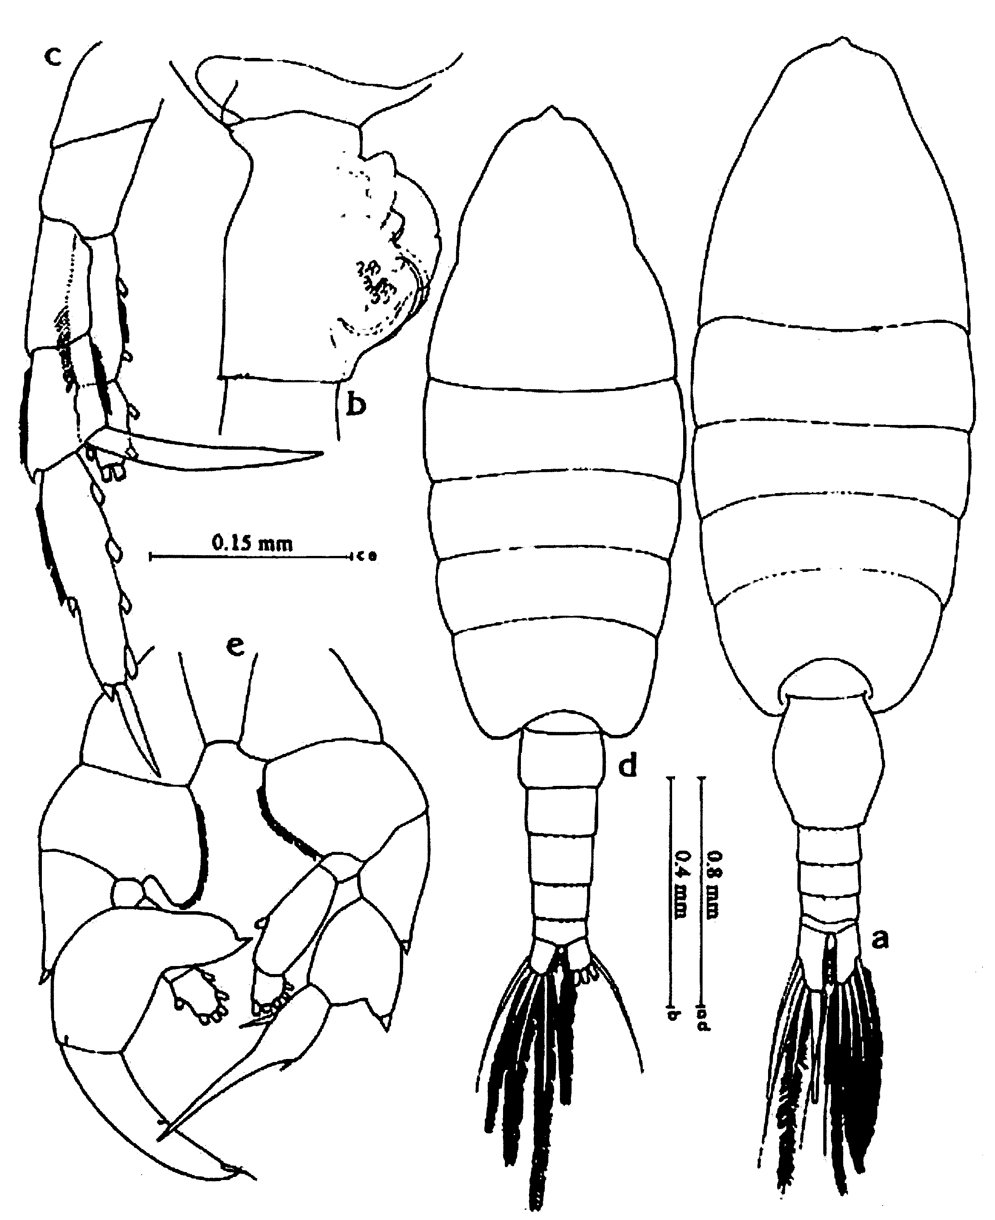 Espce Heterorhabdus papilliger - Planche 28 de figures morphologiques